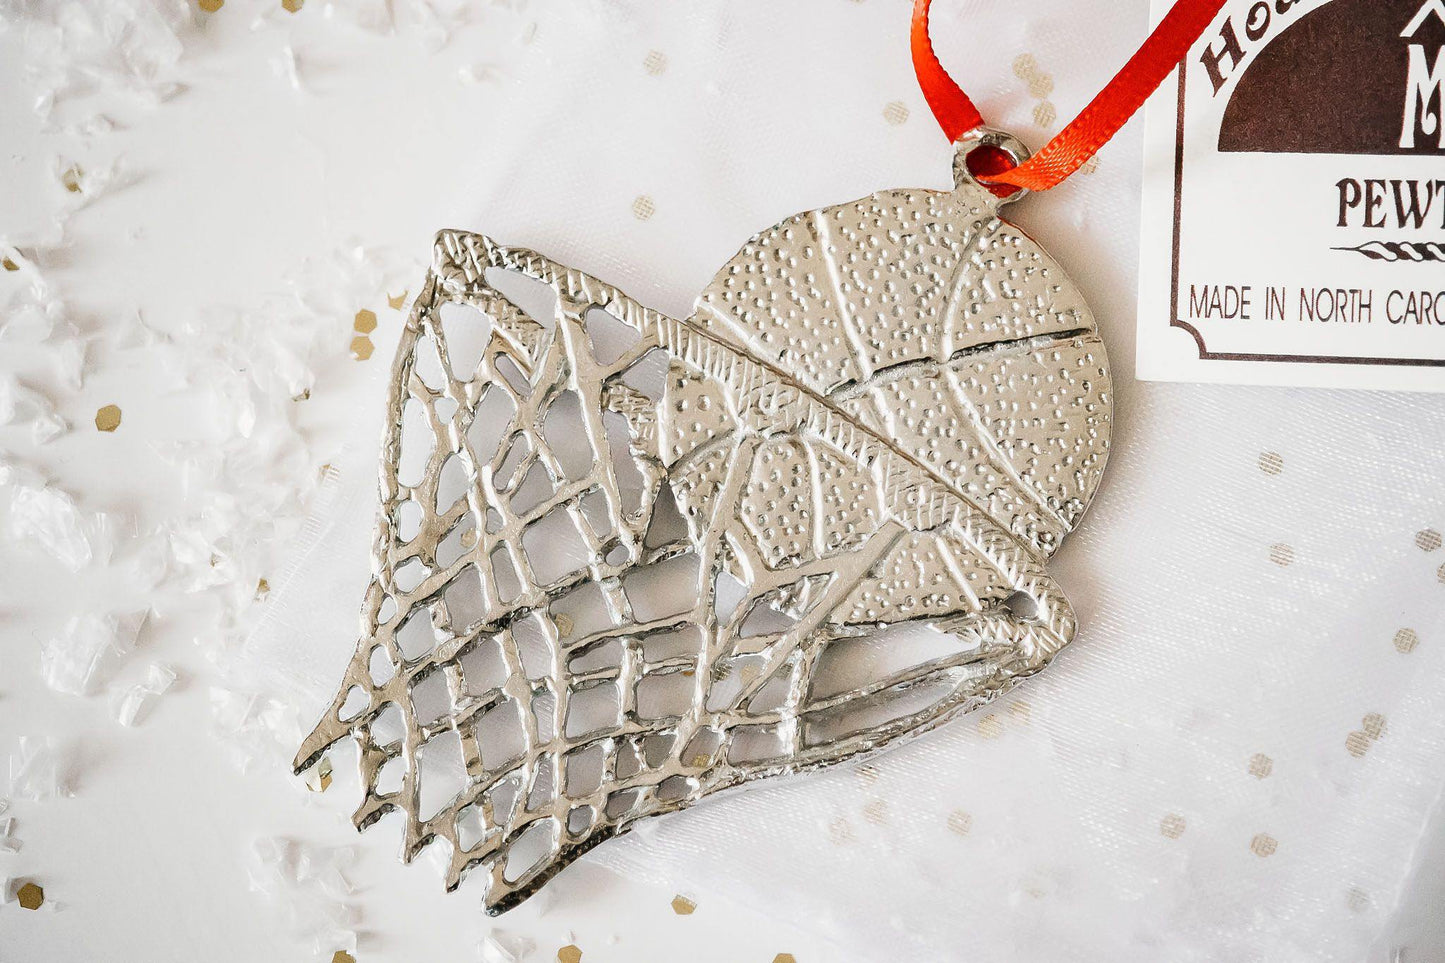 Handmade Sports Christmas Ornaments- Basketball, Basketball Player, Basketball and Goal - House of Morgan Pewter